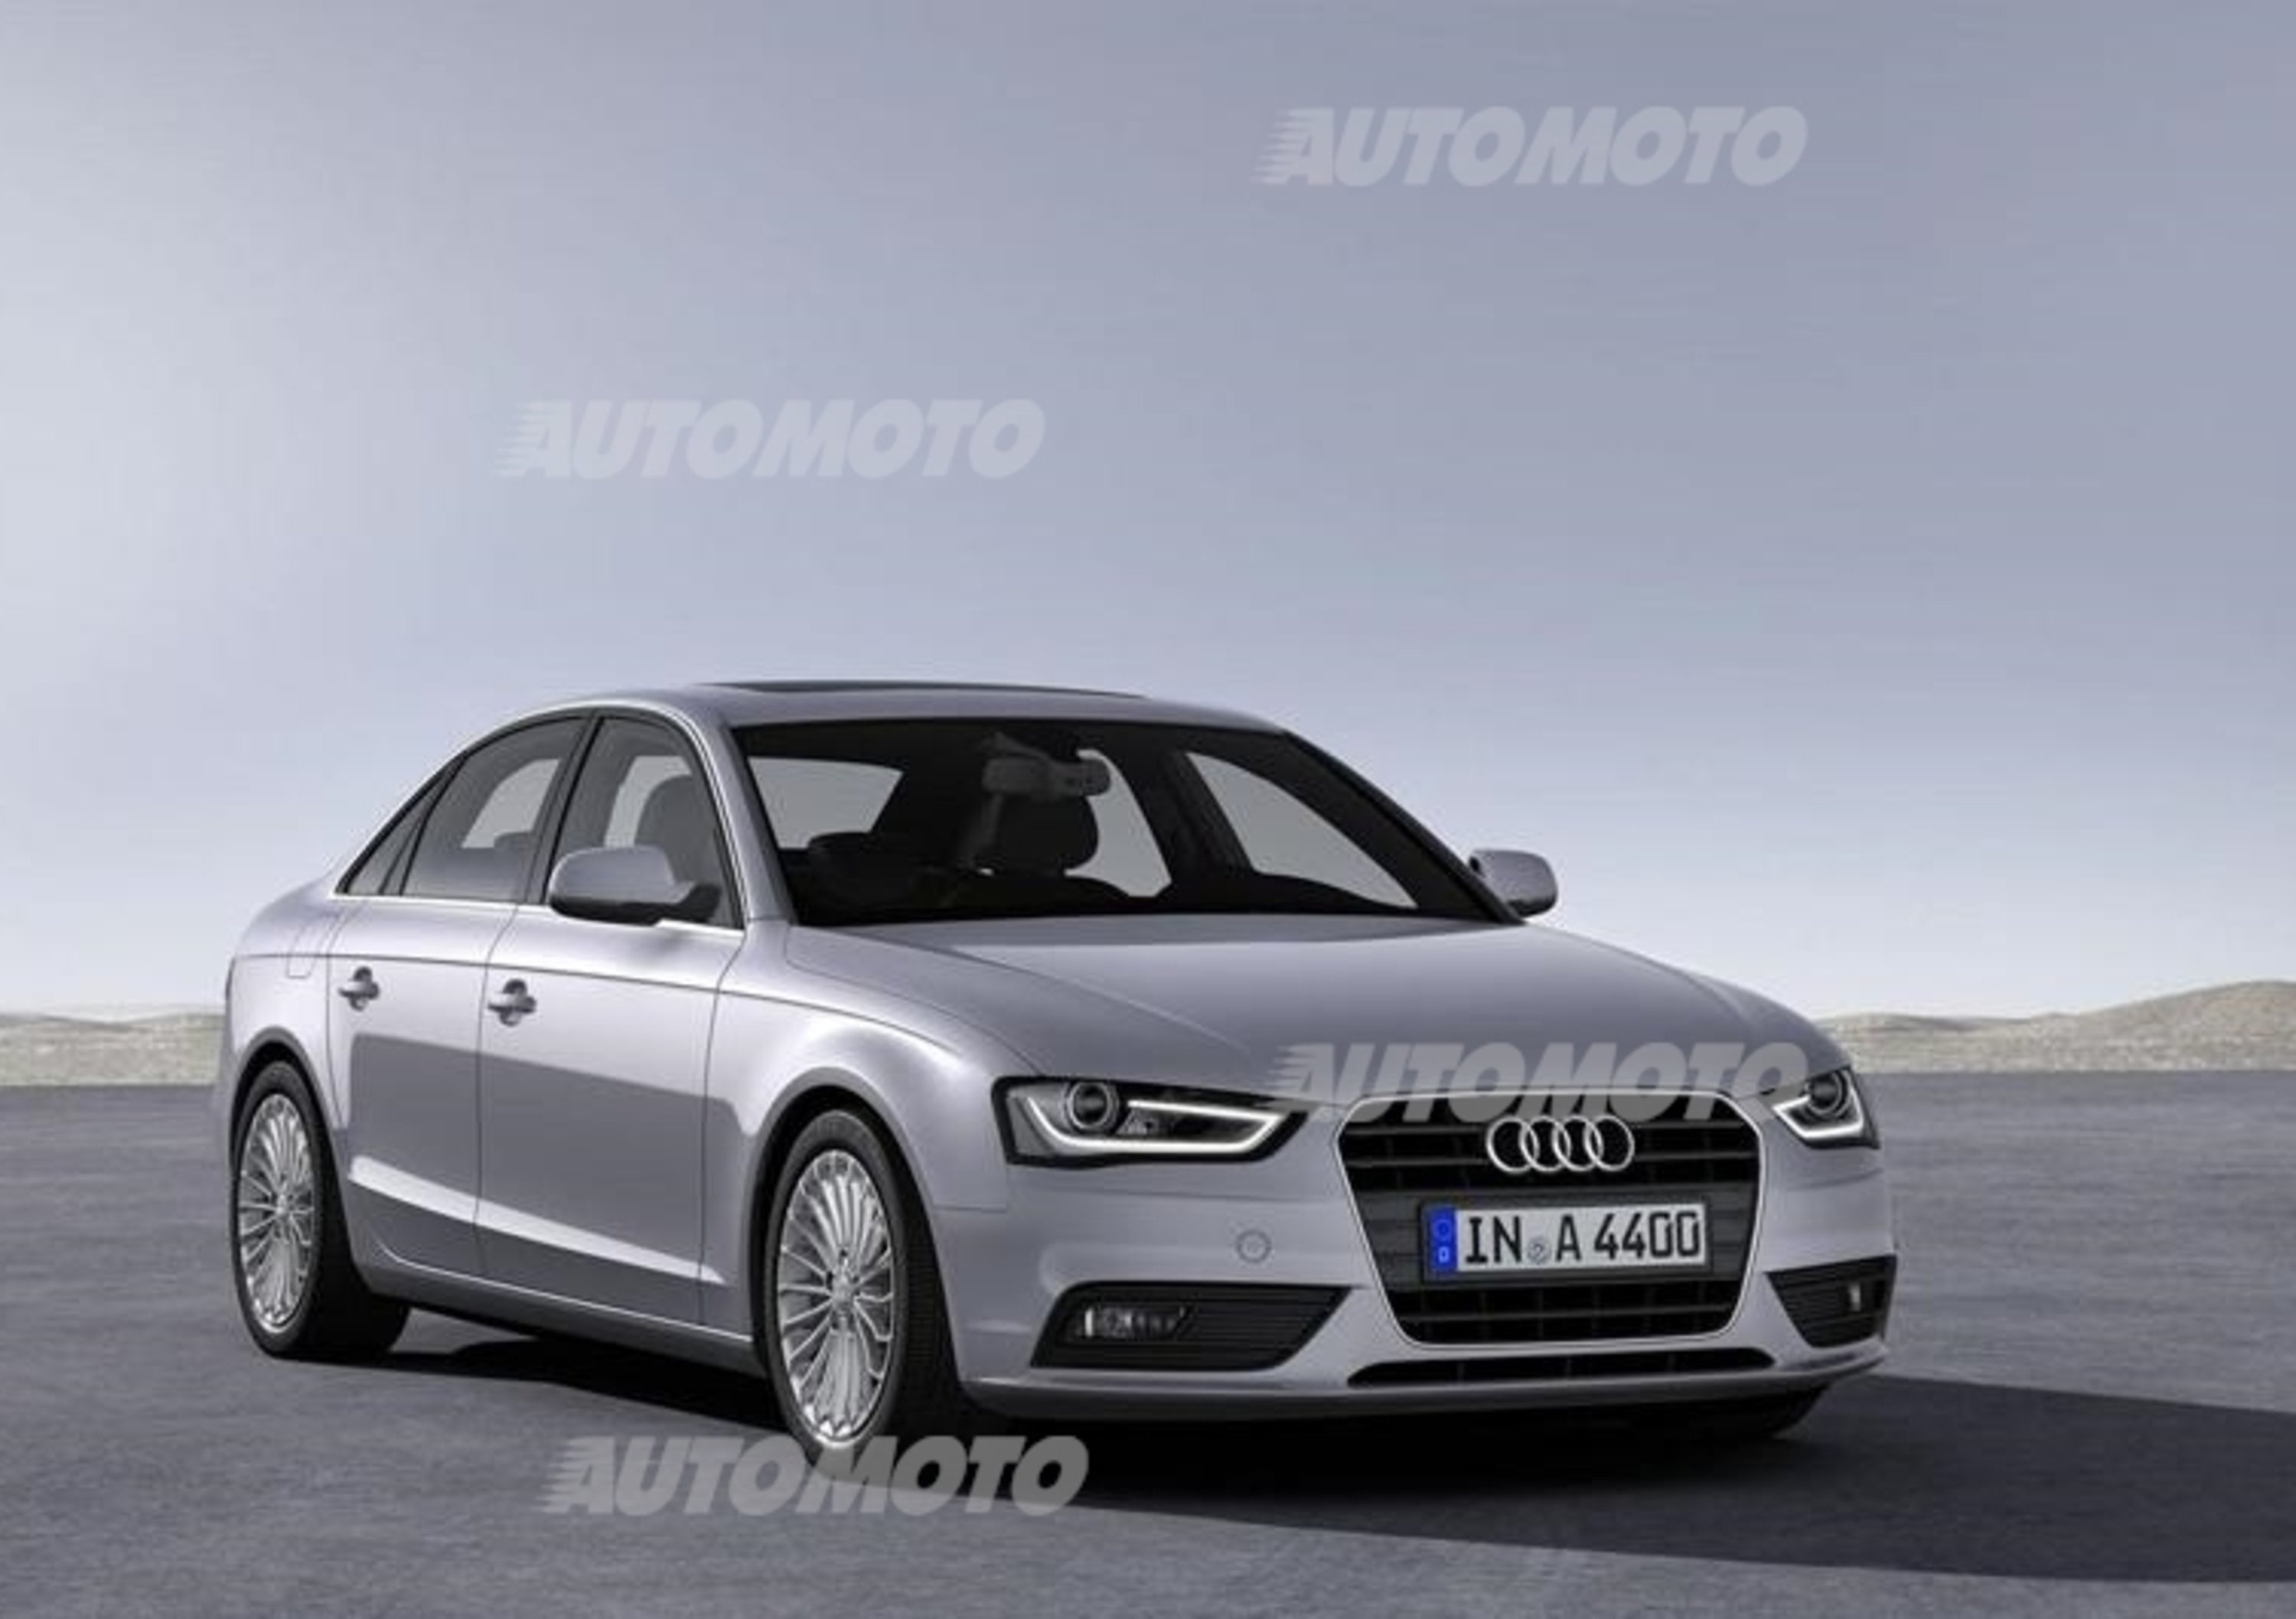 Audi A4, A5 e A6 ultra: listino prezzi